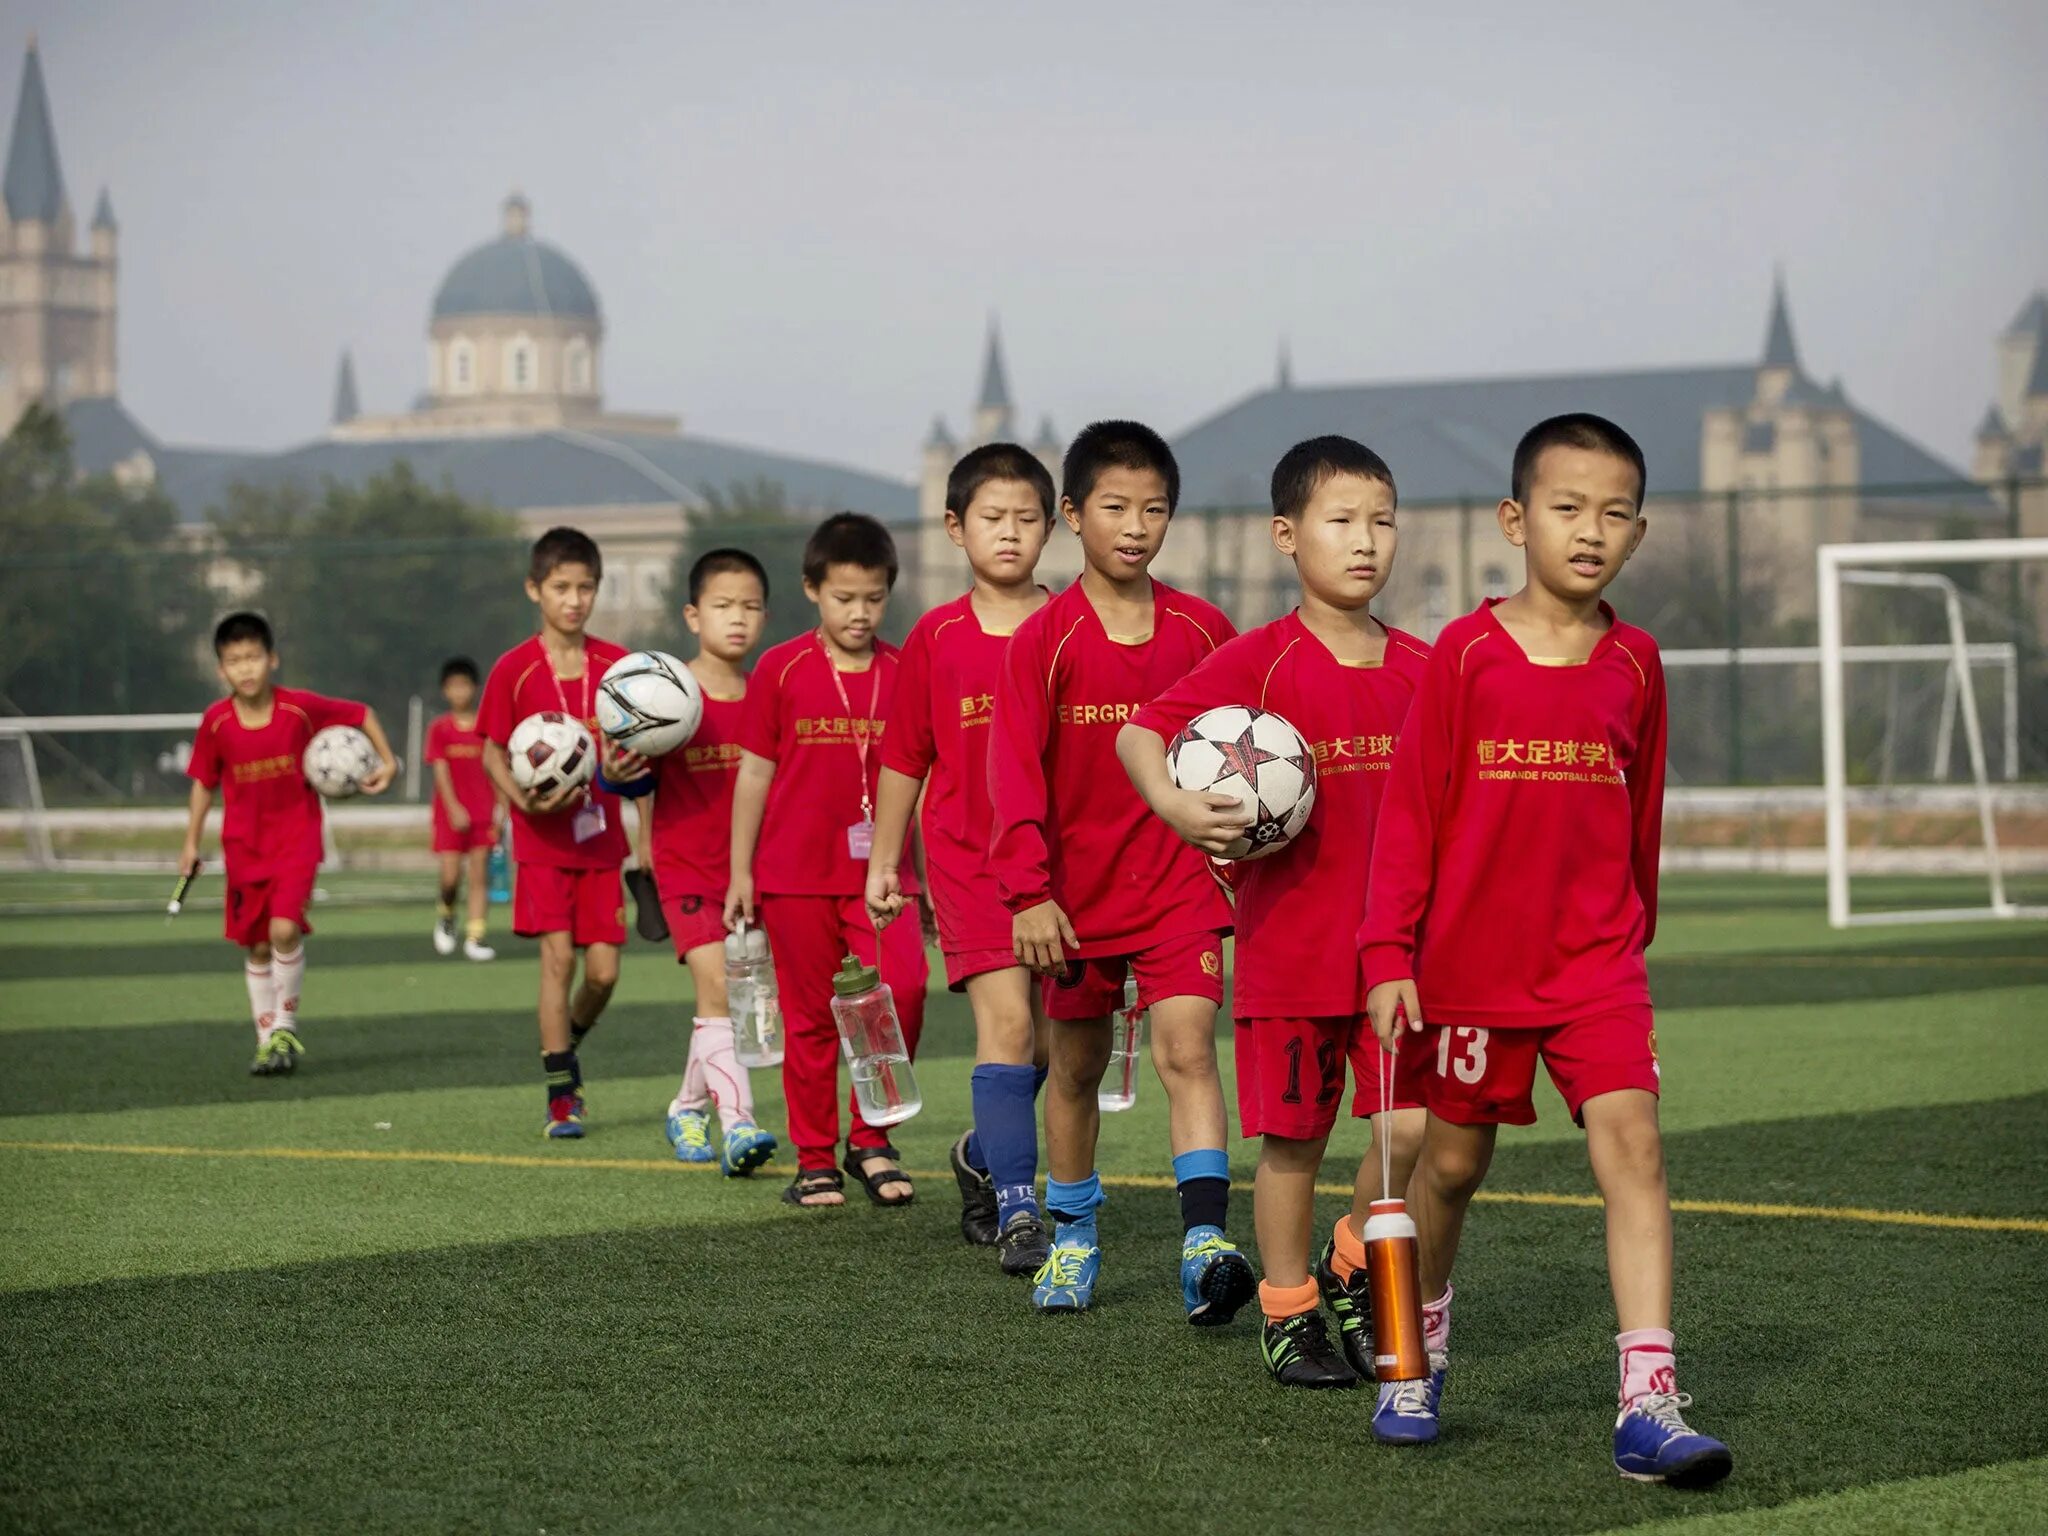 Китайские спортивные игры. Китайские футболисты. Китайская сборная по футболу. Футбольная команда Китая. Детский спорт в Китае.